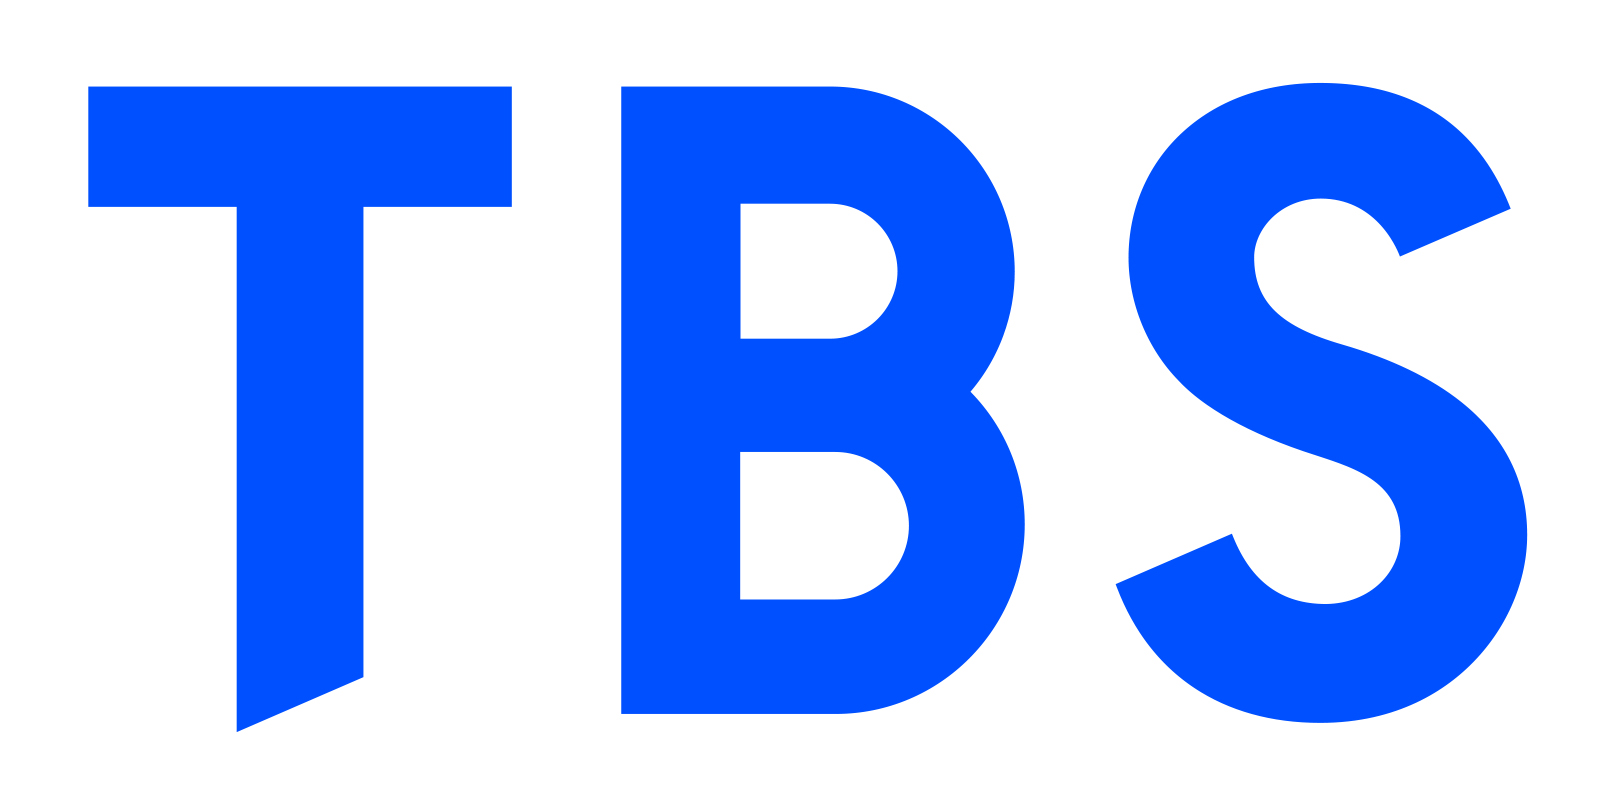 株式会社TBS TV